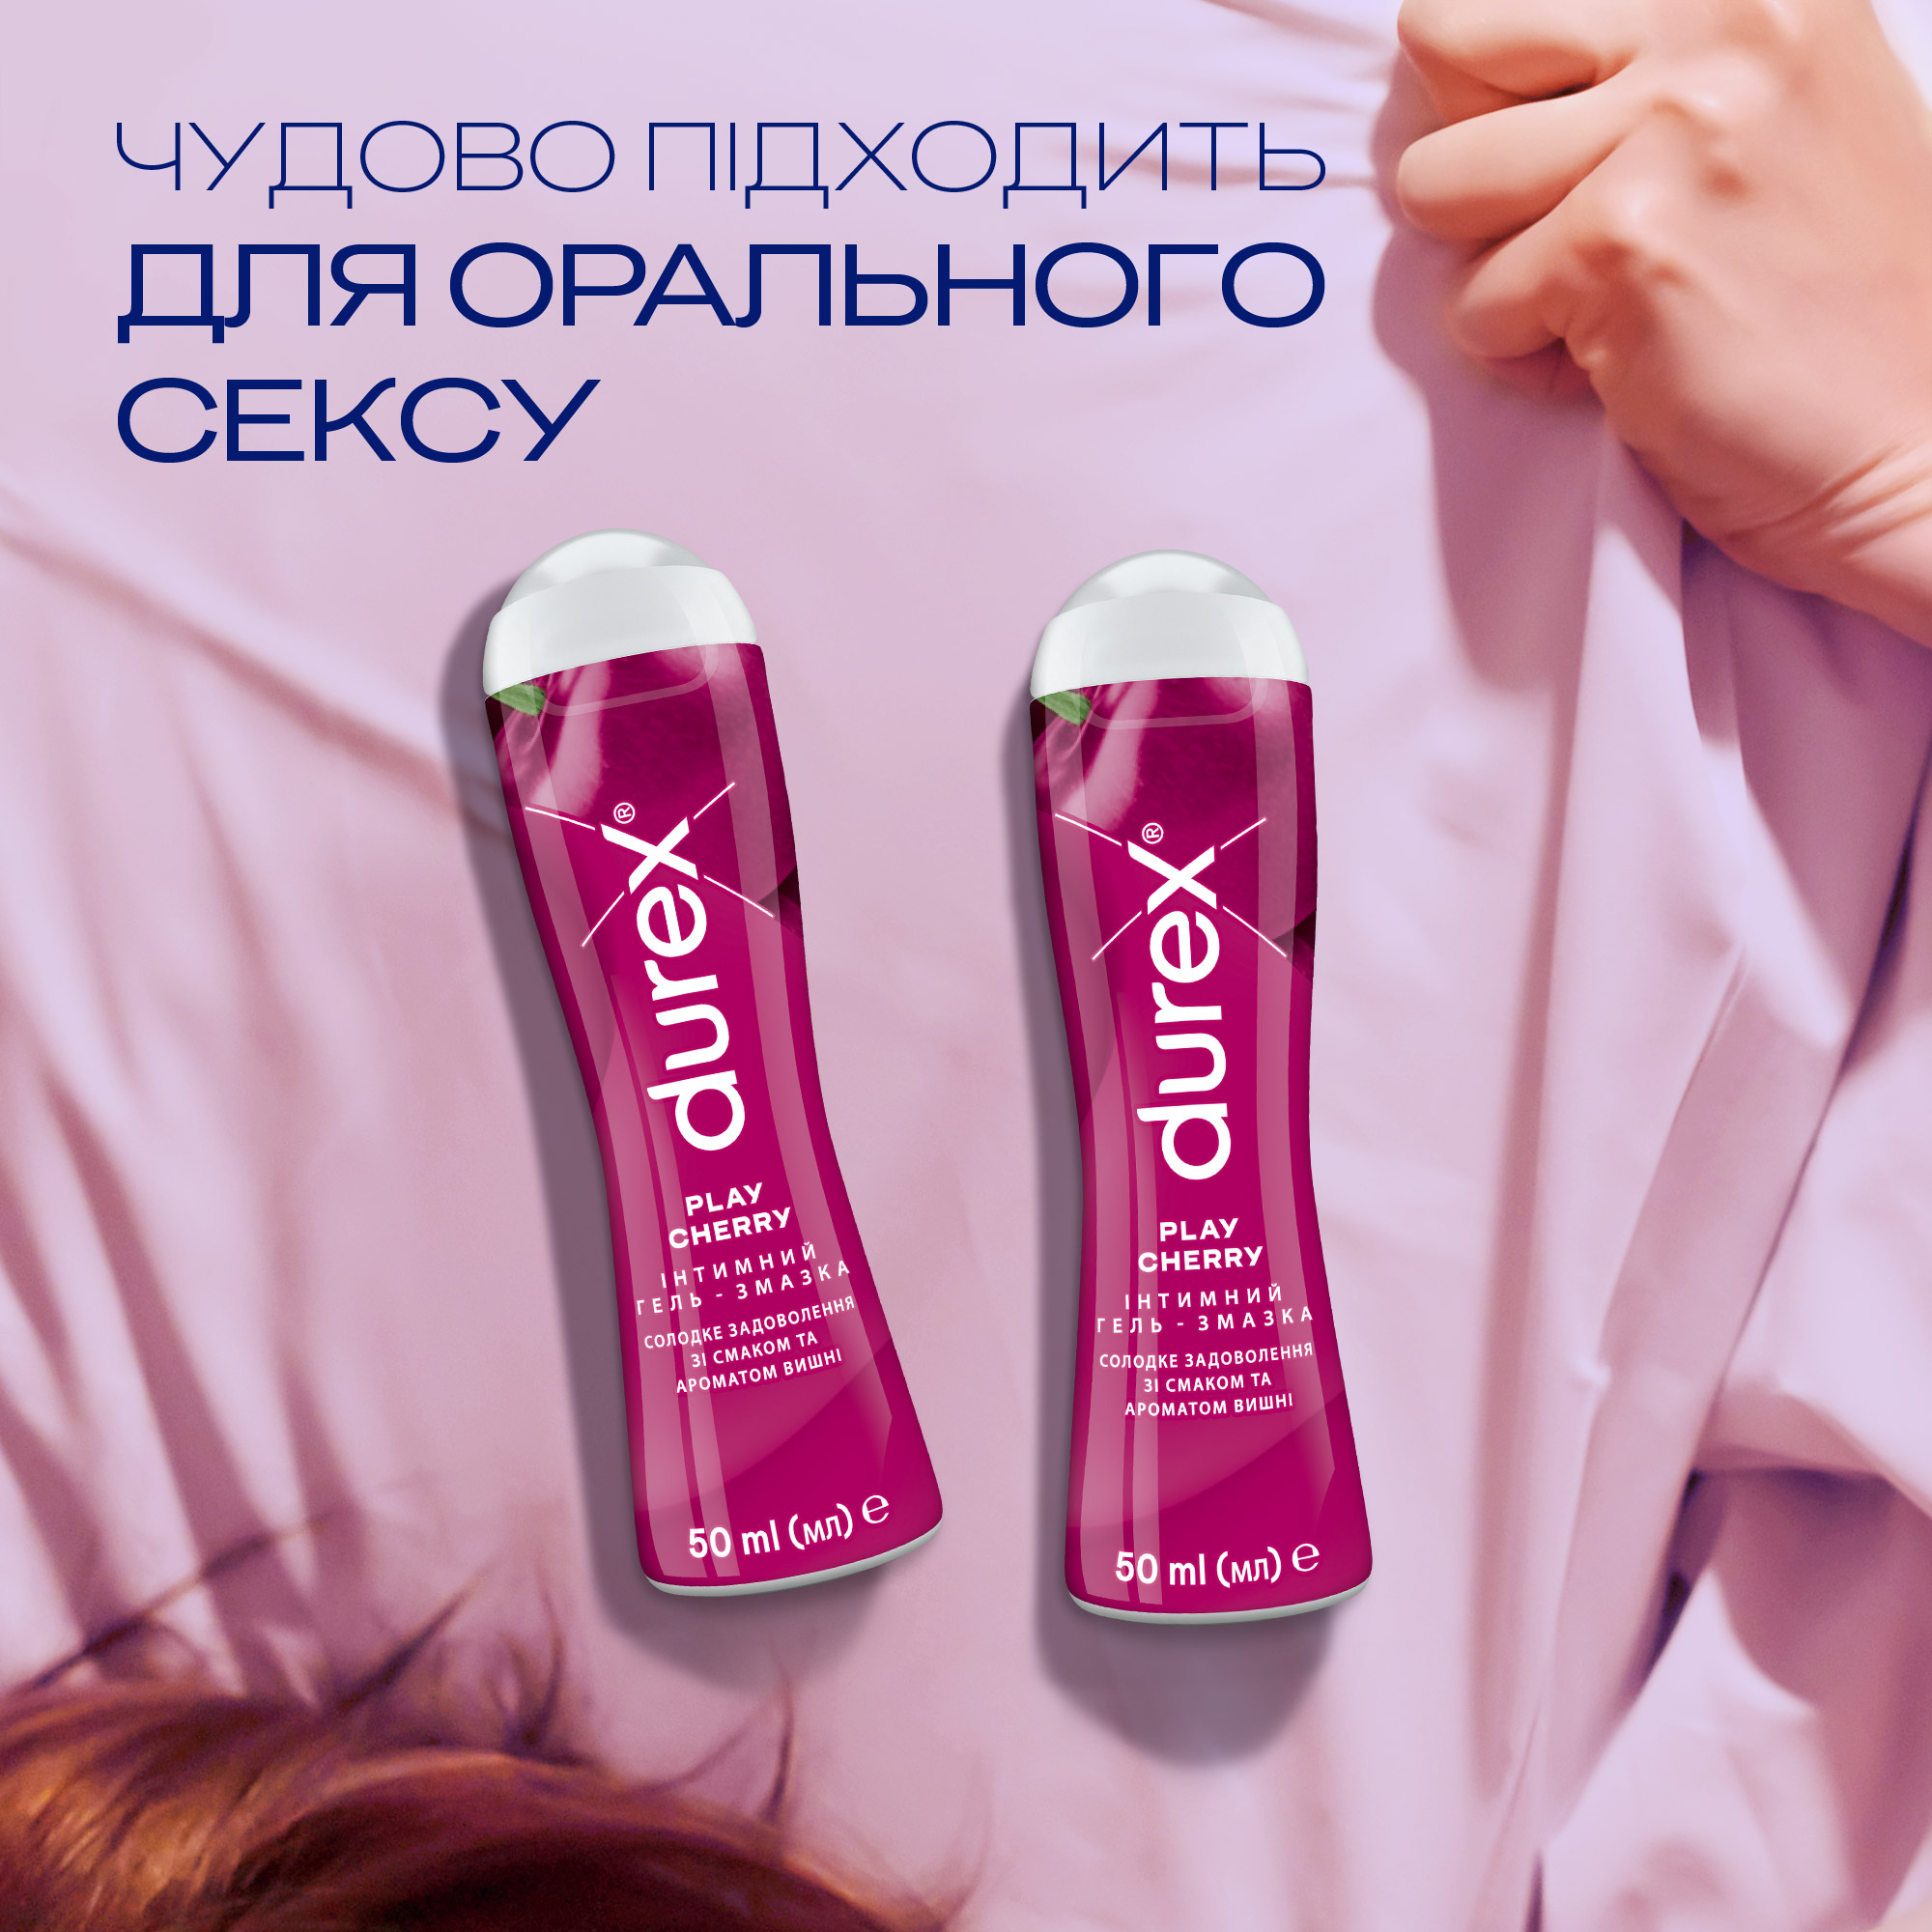 Интимная гель-смазка Durex Play Cherry, со вкусом и ароматом вишни (лубрикант), 50 мл (3231112) - фото 4